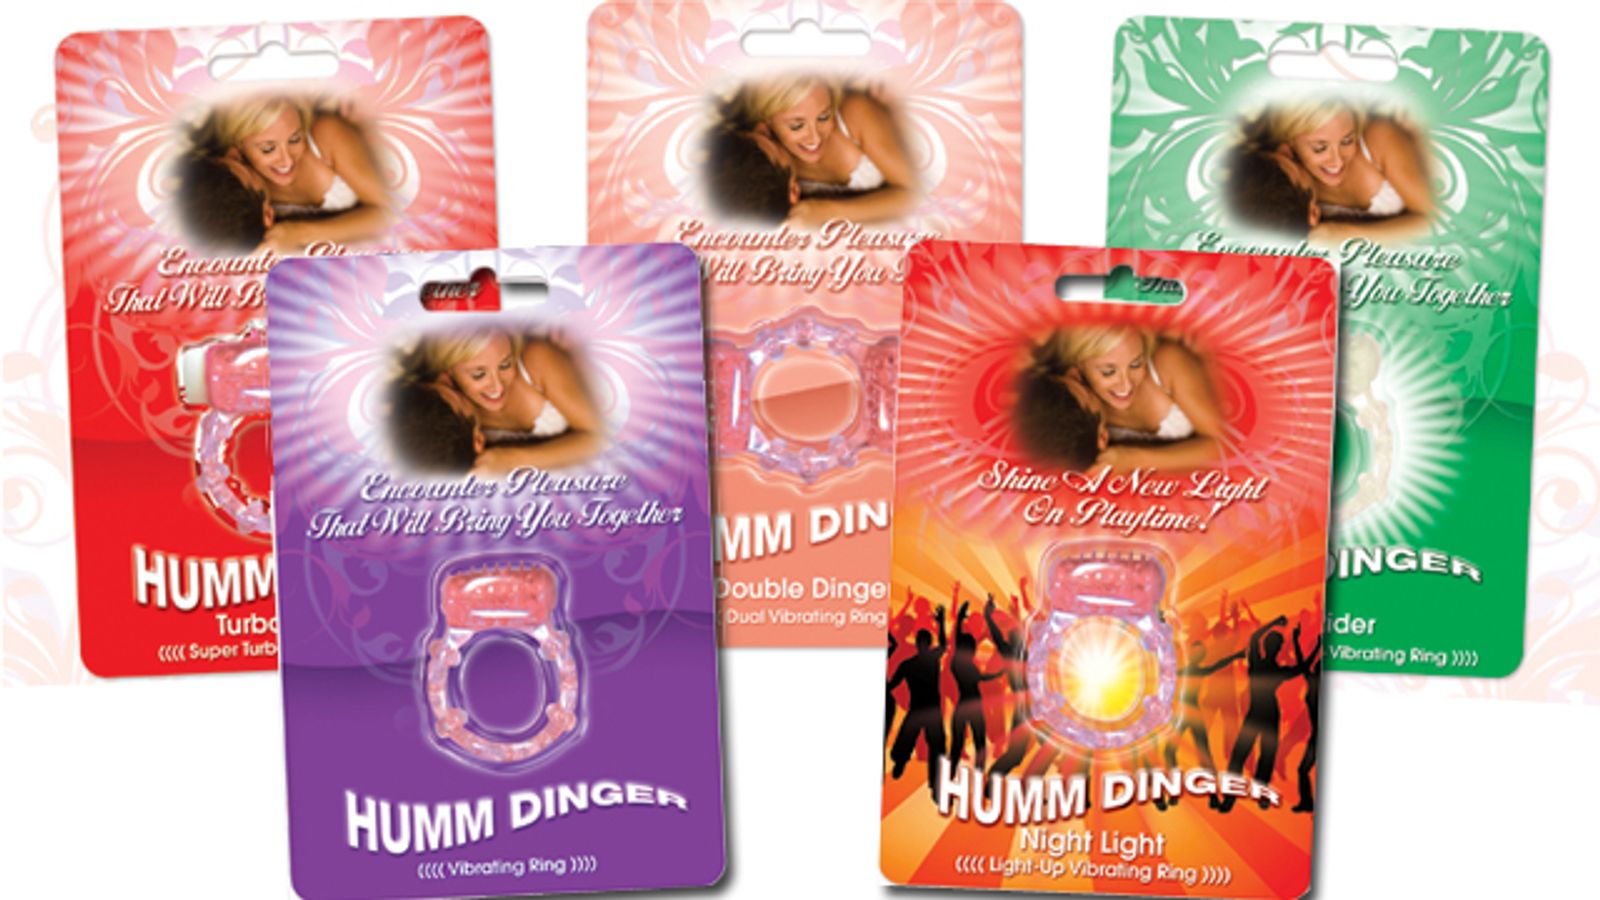 HOTT Products Revamps Humm Dinger Line